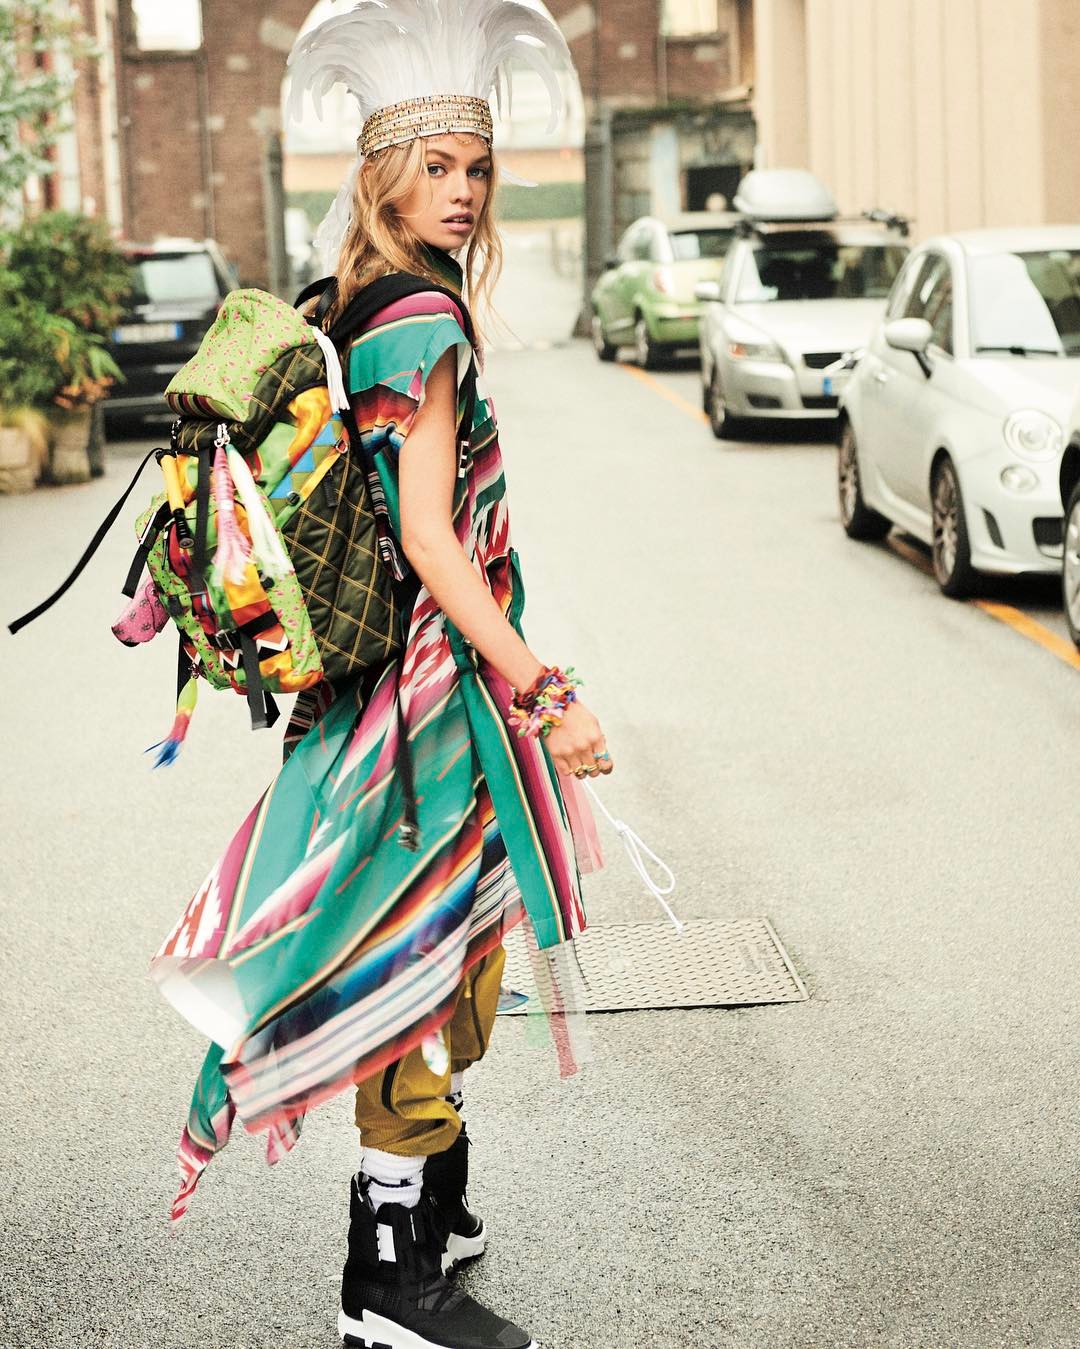 Voguejapan Fresh Upbeat がテーマの Vogue Japan 6月号は本日発売 イットガール ステラ マックスウェルがハッピーなバックパッカースタイルをまとっ Wacoca Japan People Life Style